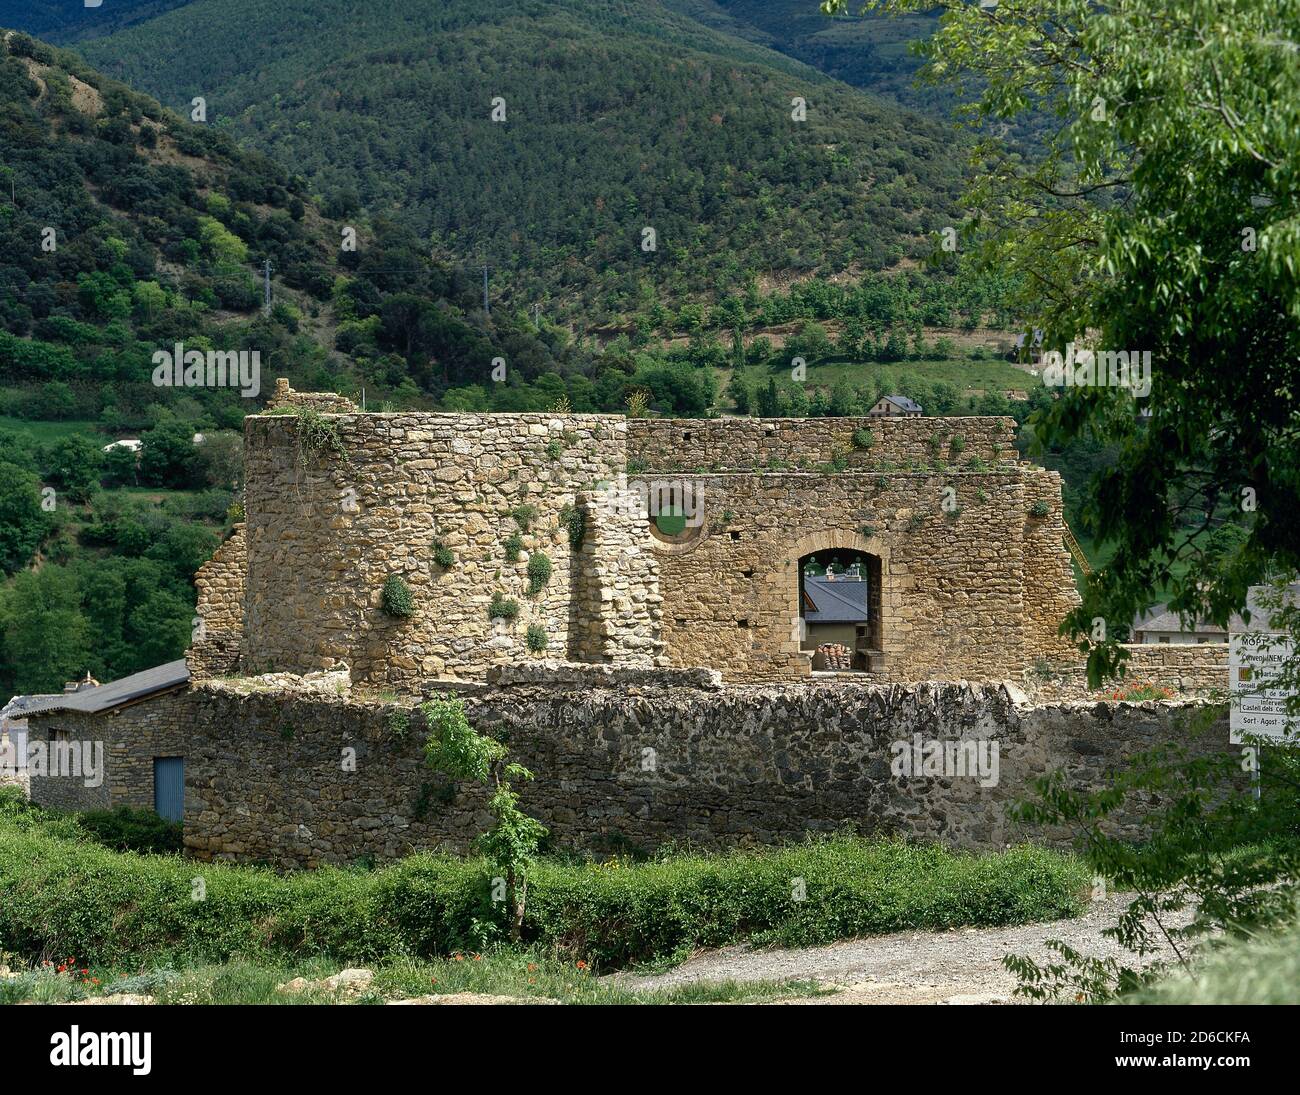 Spagna, Catalogna, regione Pallars Sobira, provincia di Lleida, Sort. Castello dei conti di Pallari. La fortezza non è documentata fino al 1281, ma la città è legata ai conti Pallari fin dal X secolo. Vista delle rovine. Foto Stock